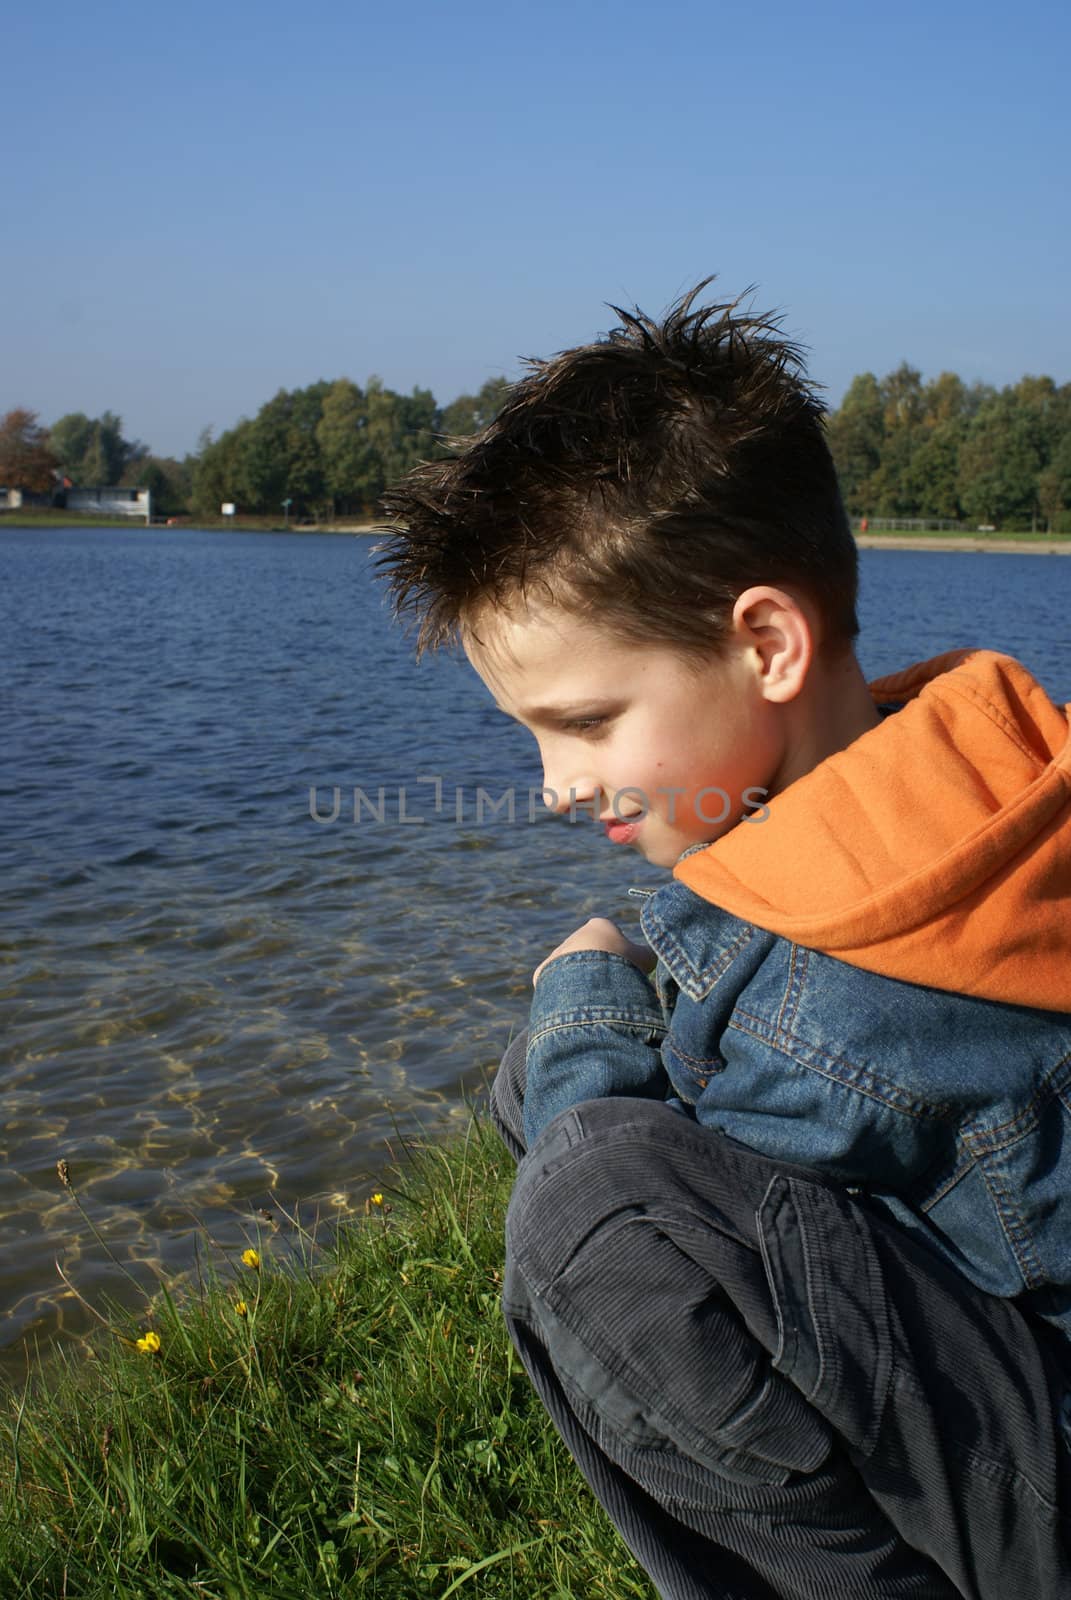 Boy sitting in grass enjoying the lake.